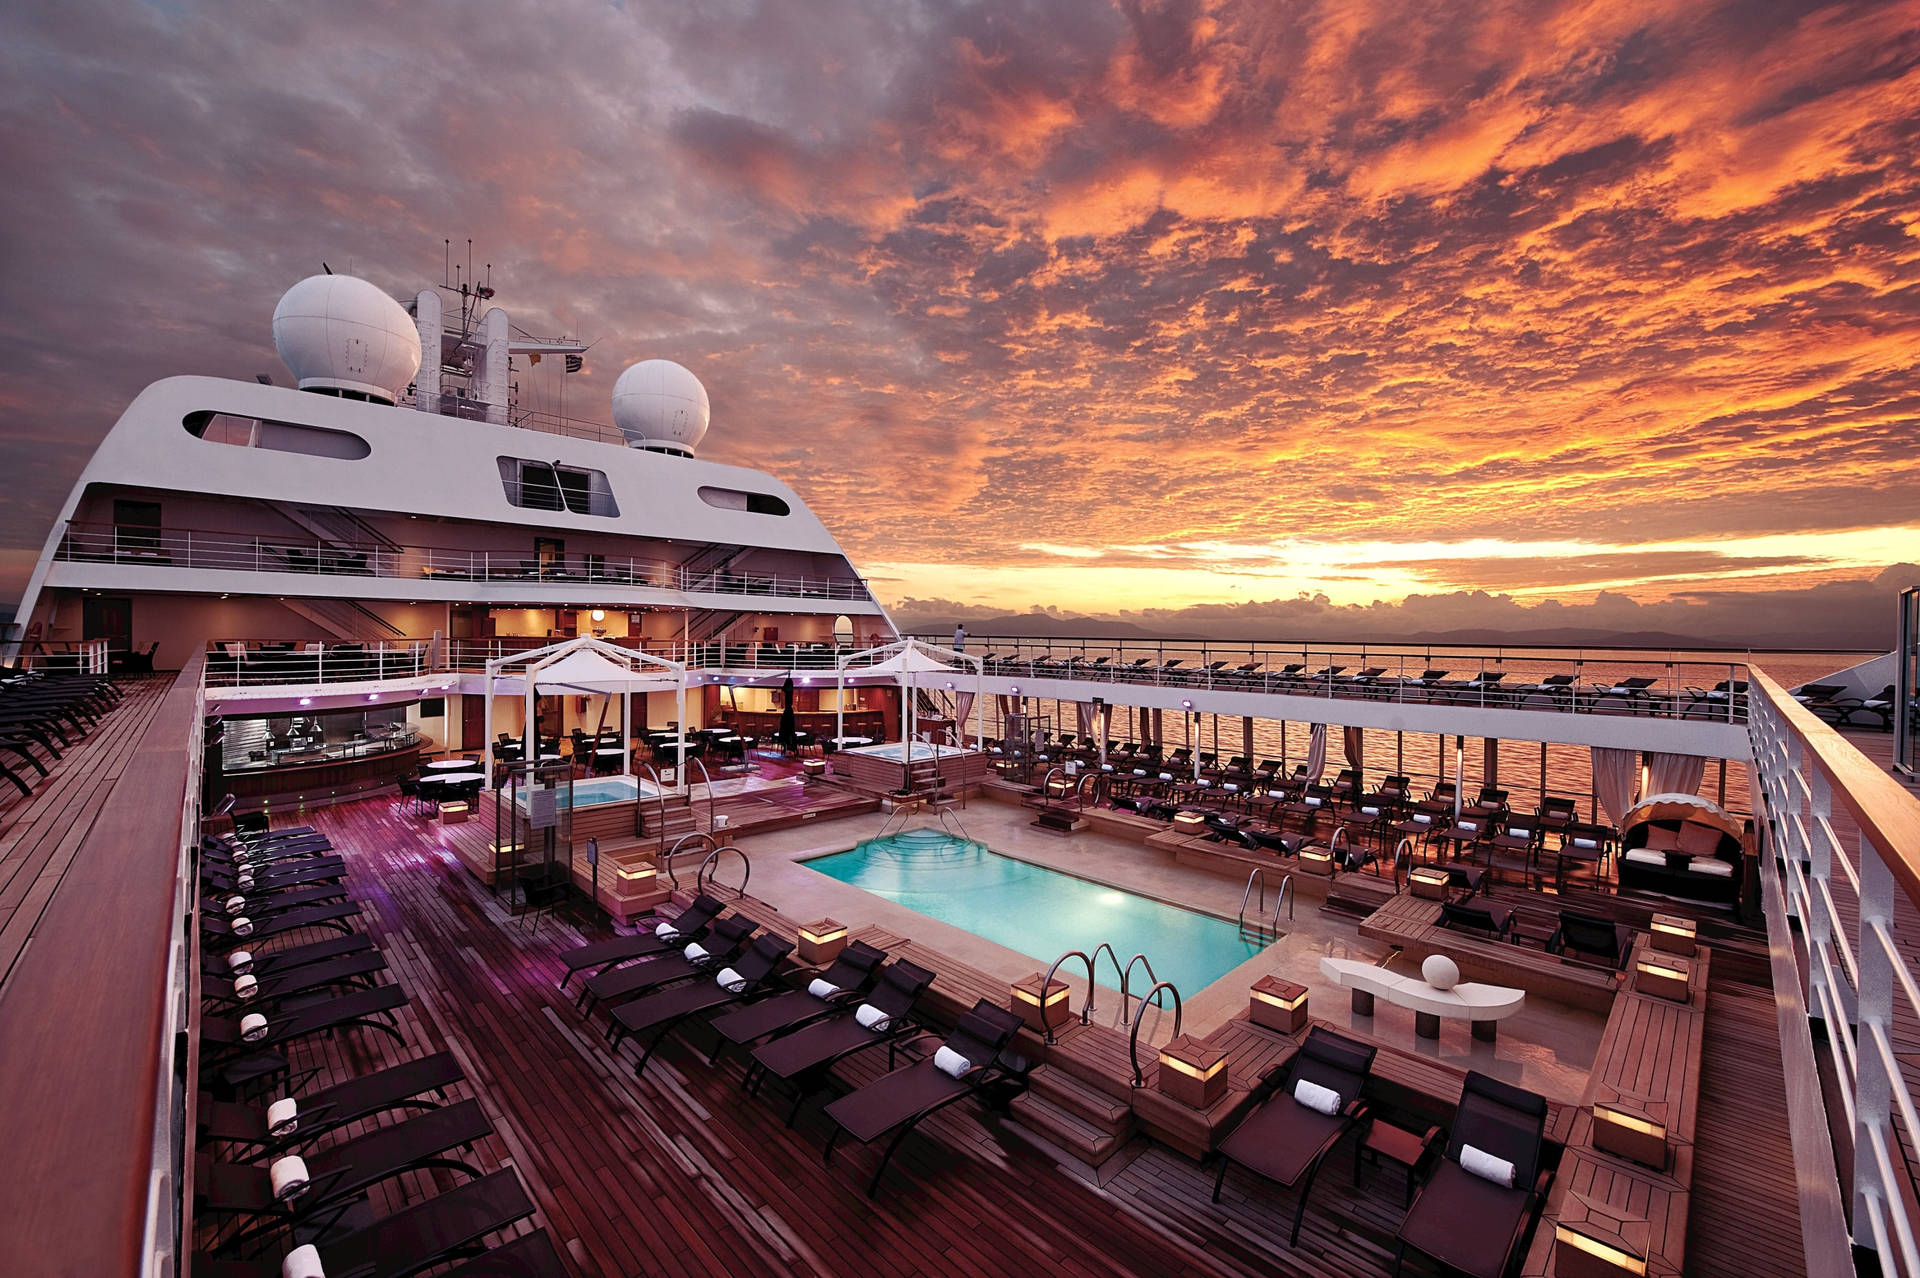 Aesthetic Cruise Ship Sunset Background